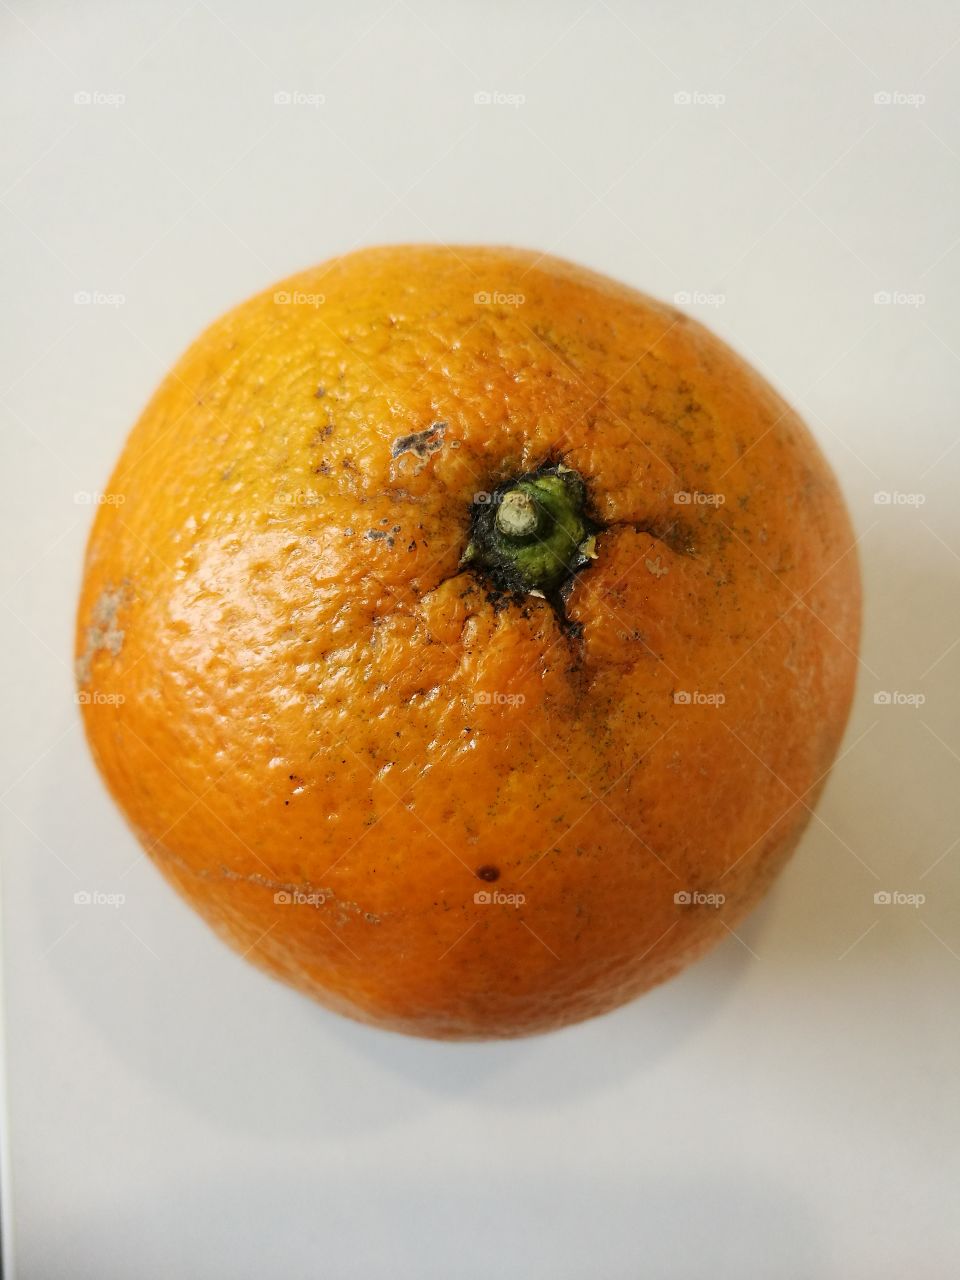 ich esse gerne eine Orange